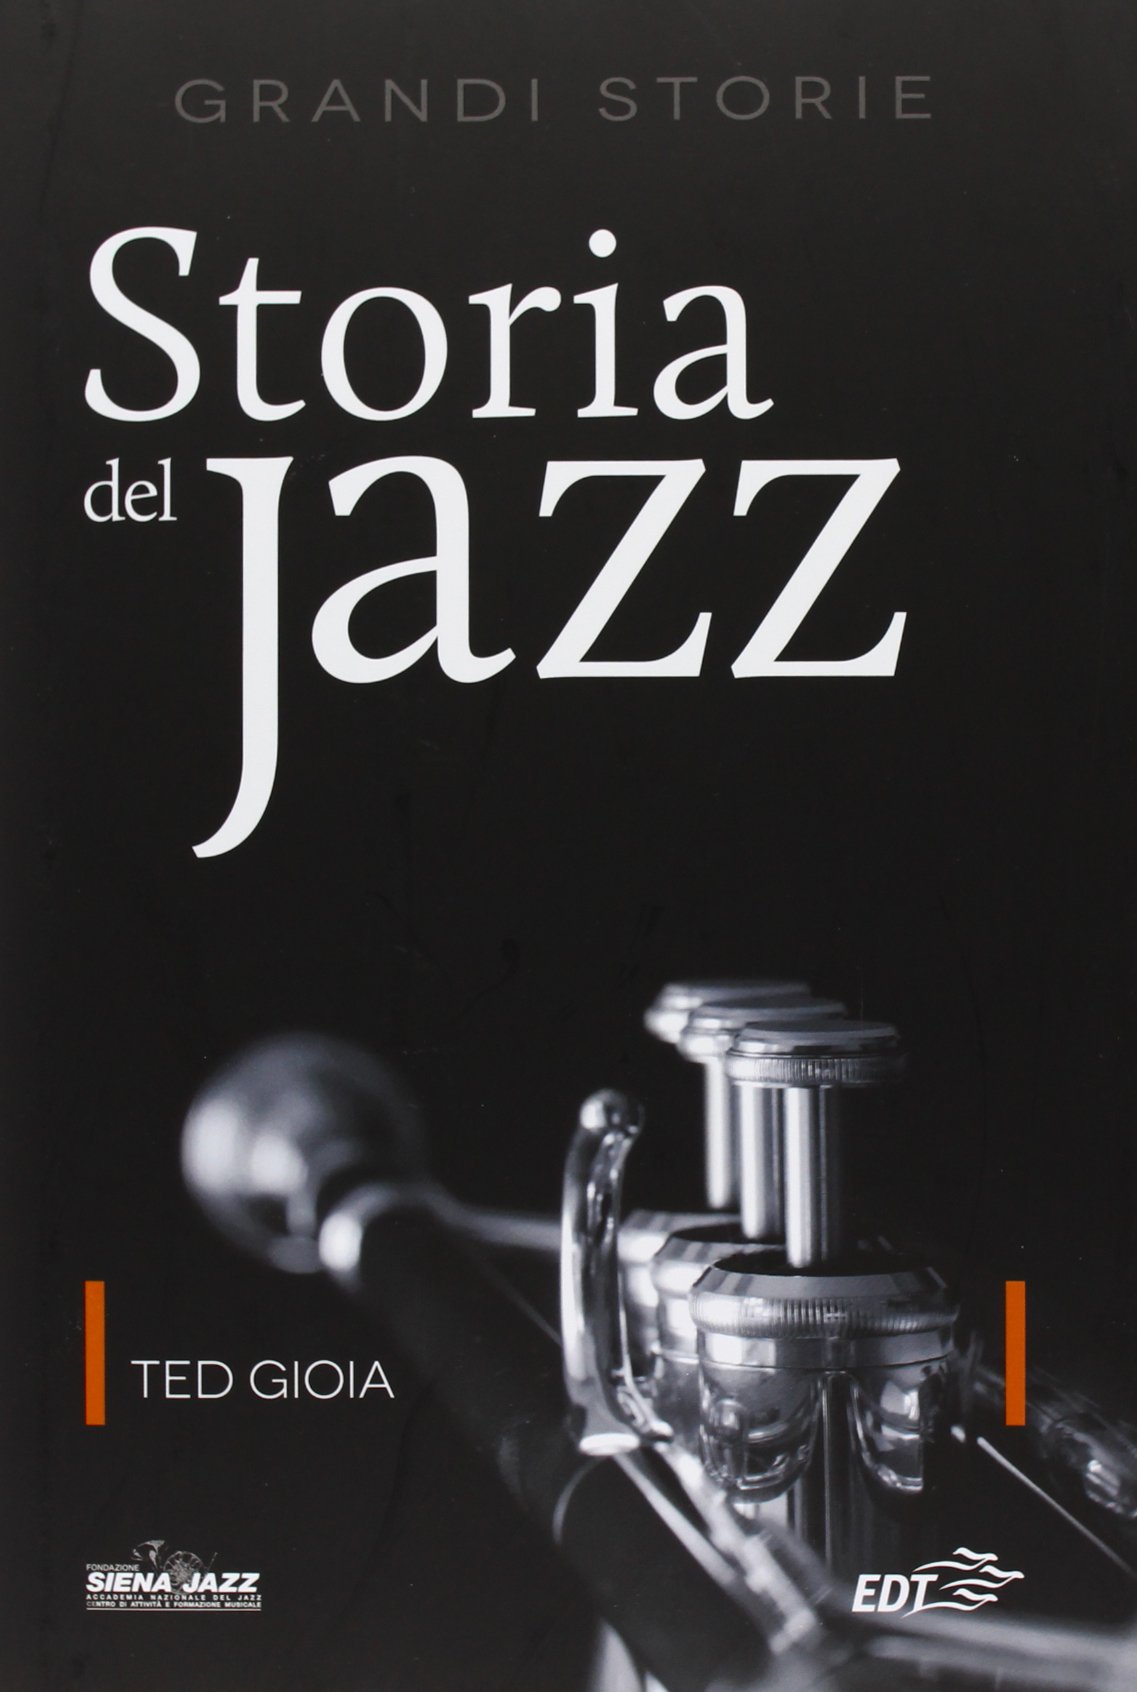 Storie del jazz Italia